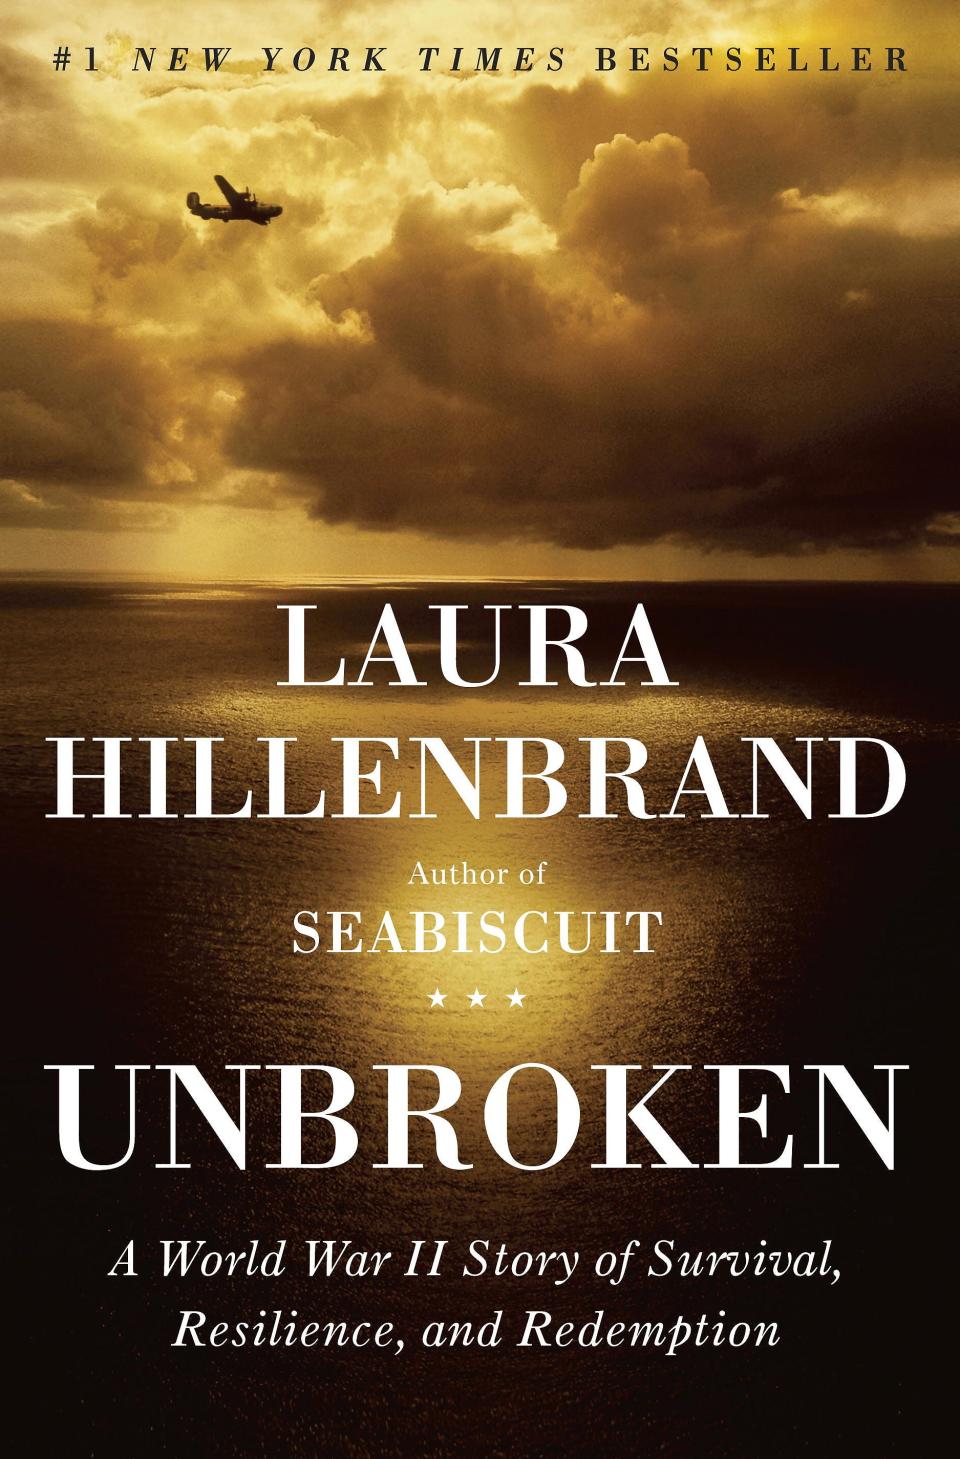 "Unbroken" by Laura Hillenbrand